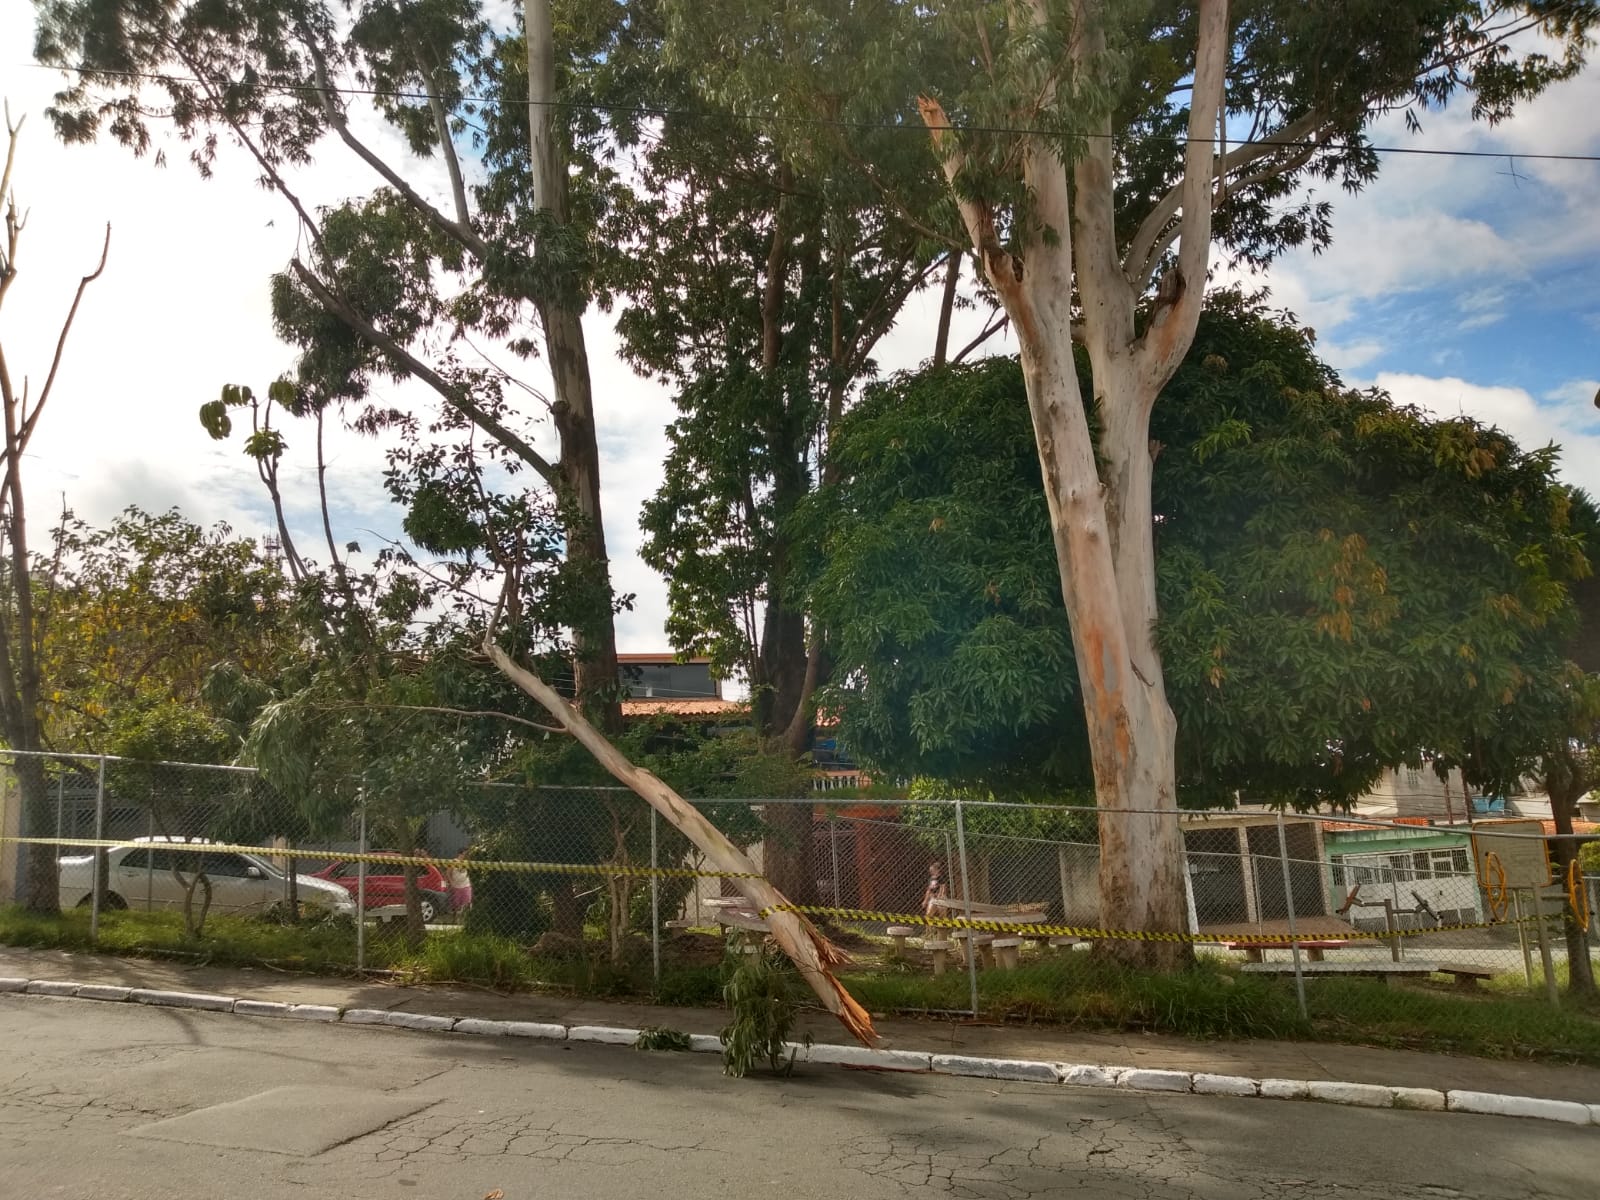 #PraCegoVer - Árvore caída à espera de remoção e recolhimento. O local está sinalizado.